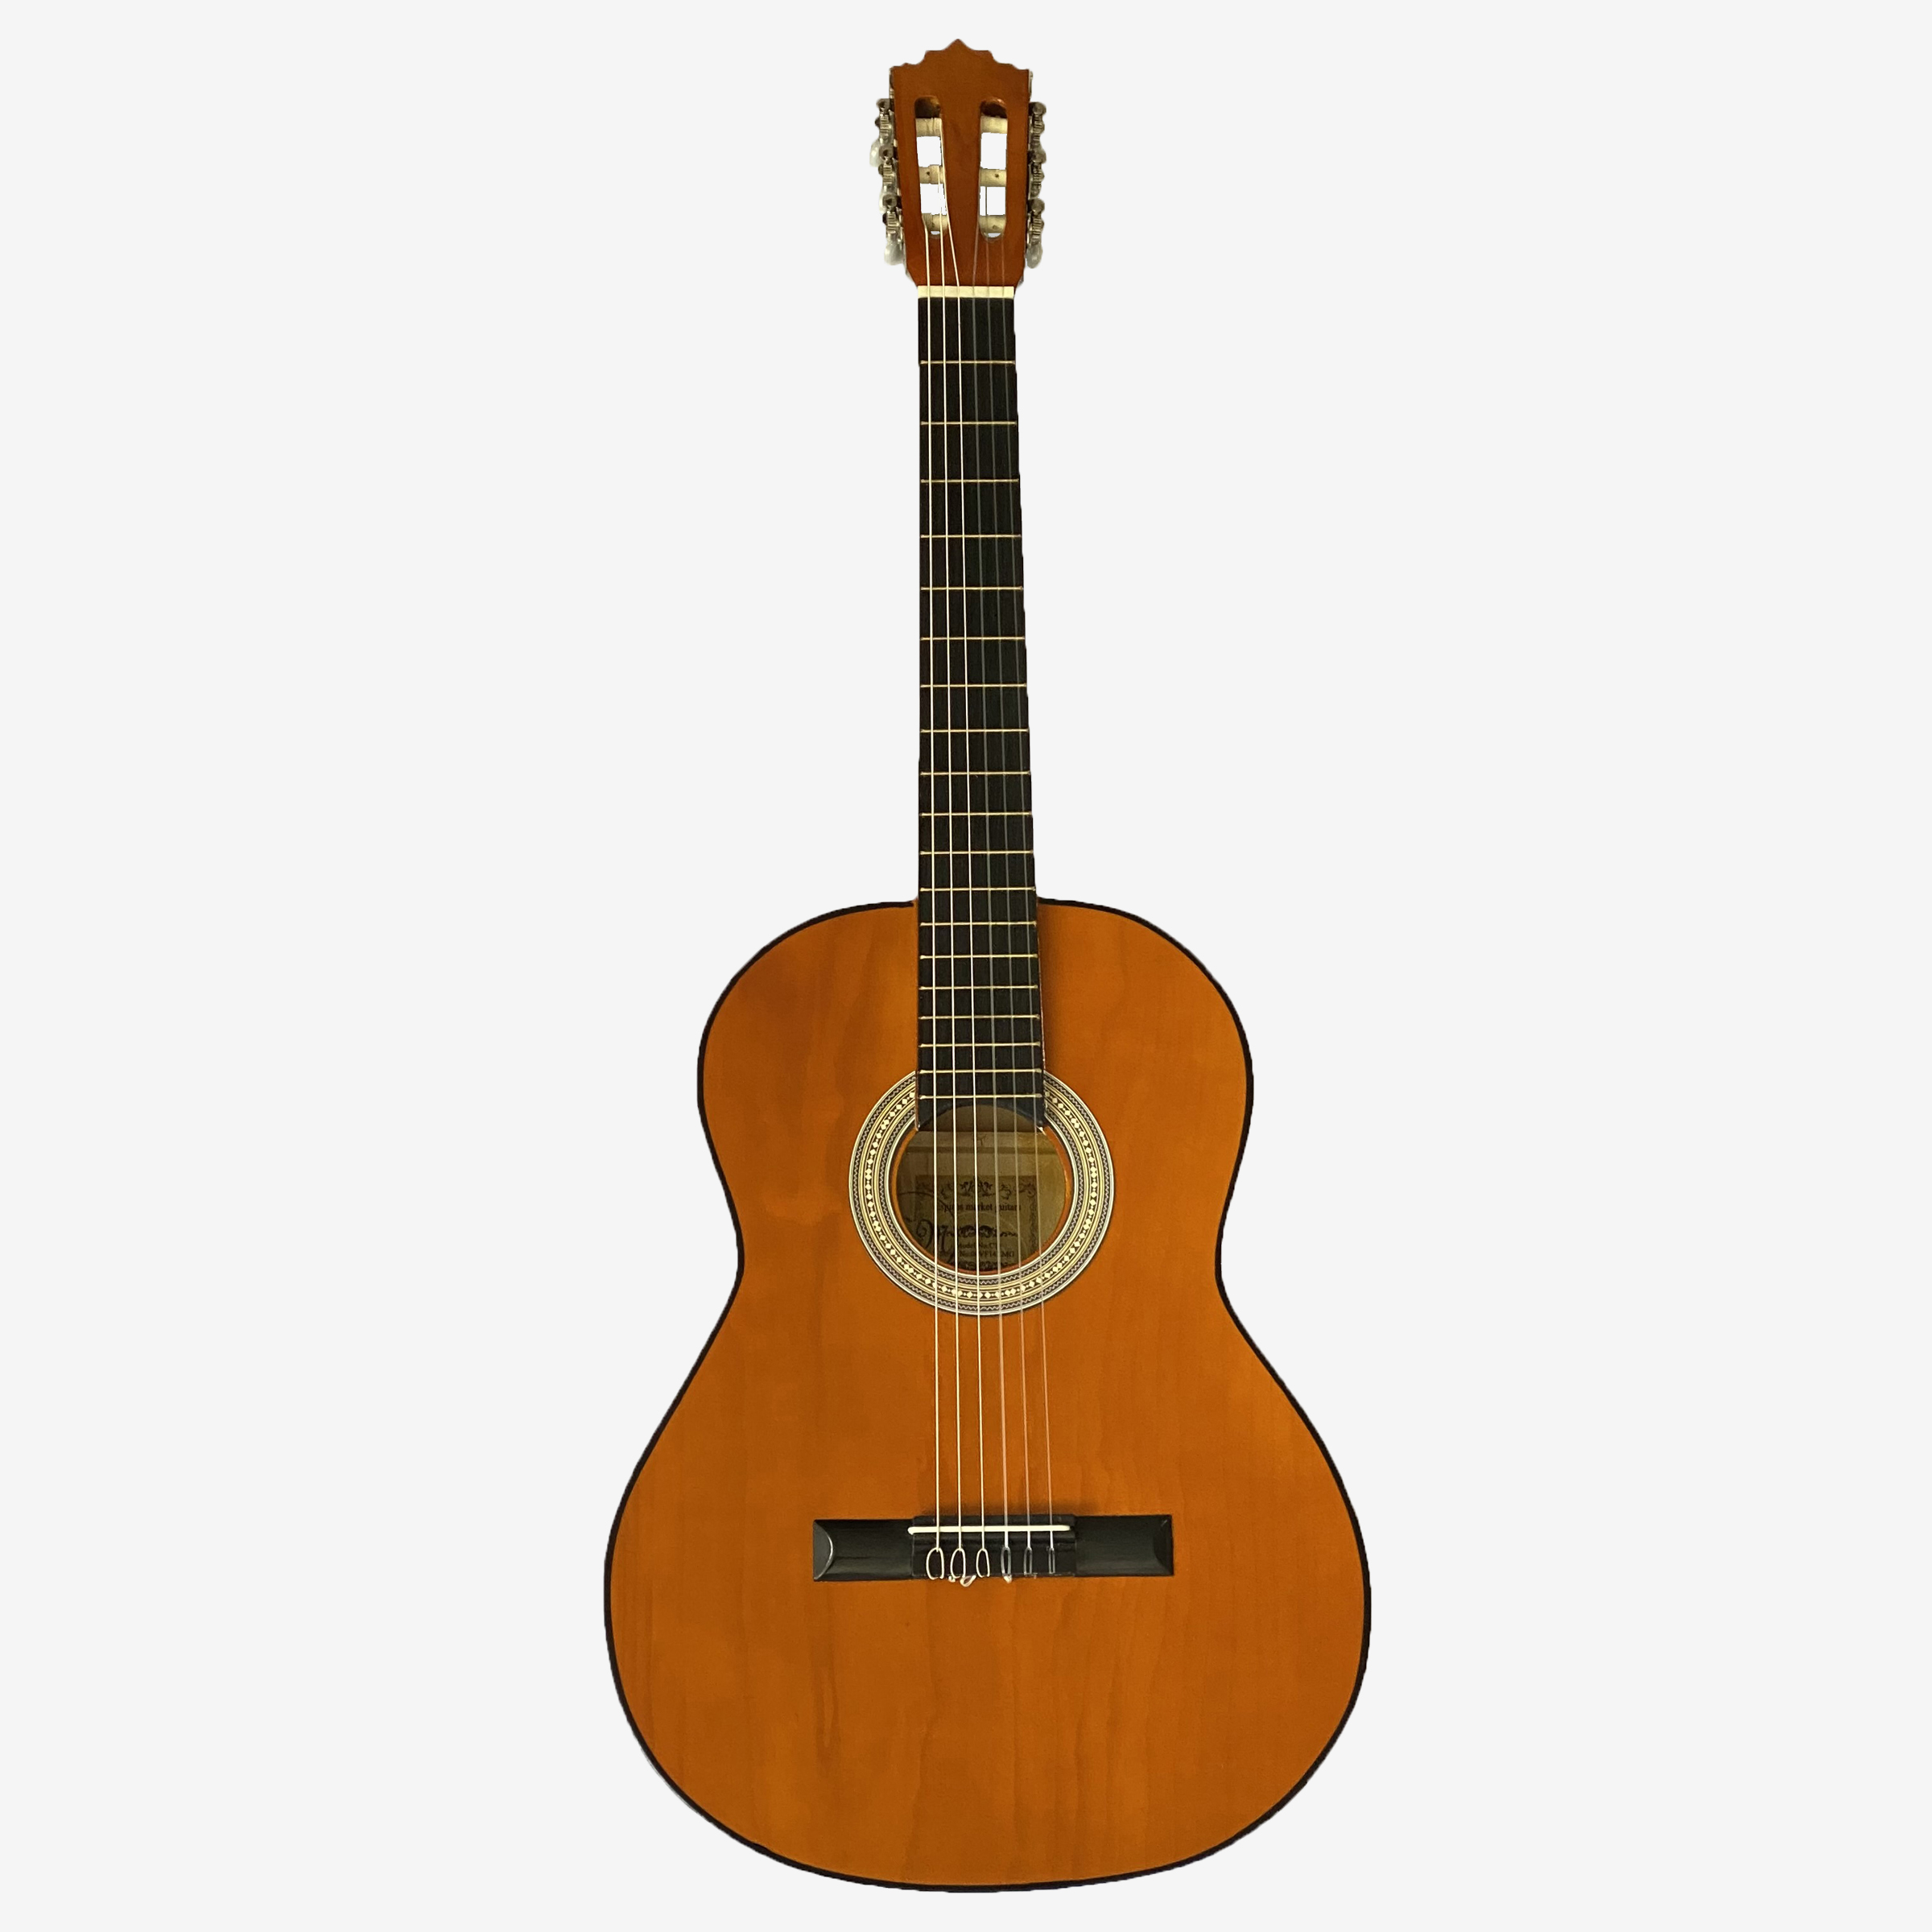 نکته خرید - قیمت روز گیتار کلاسیک اسپیروس مارکت مدل C70 خرید